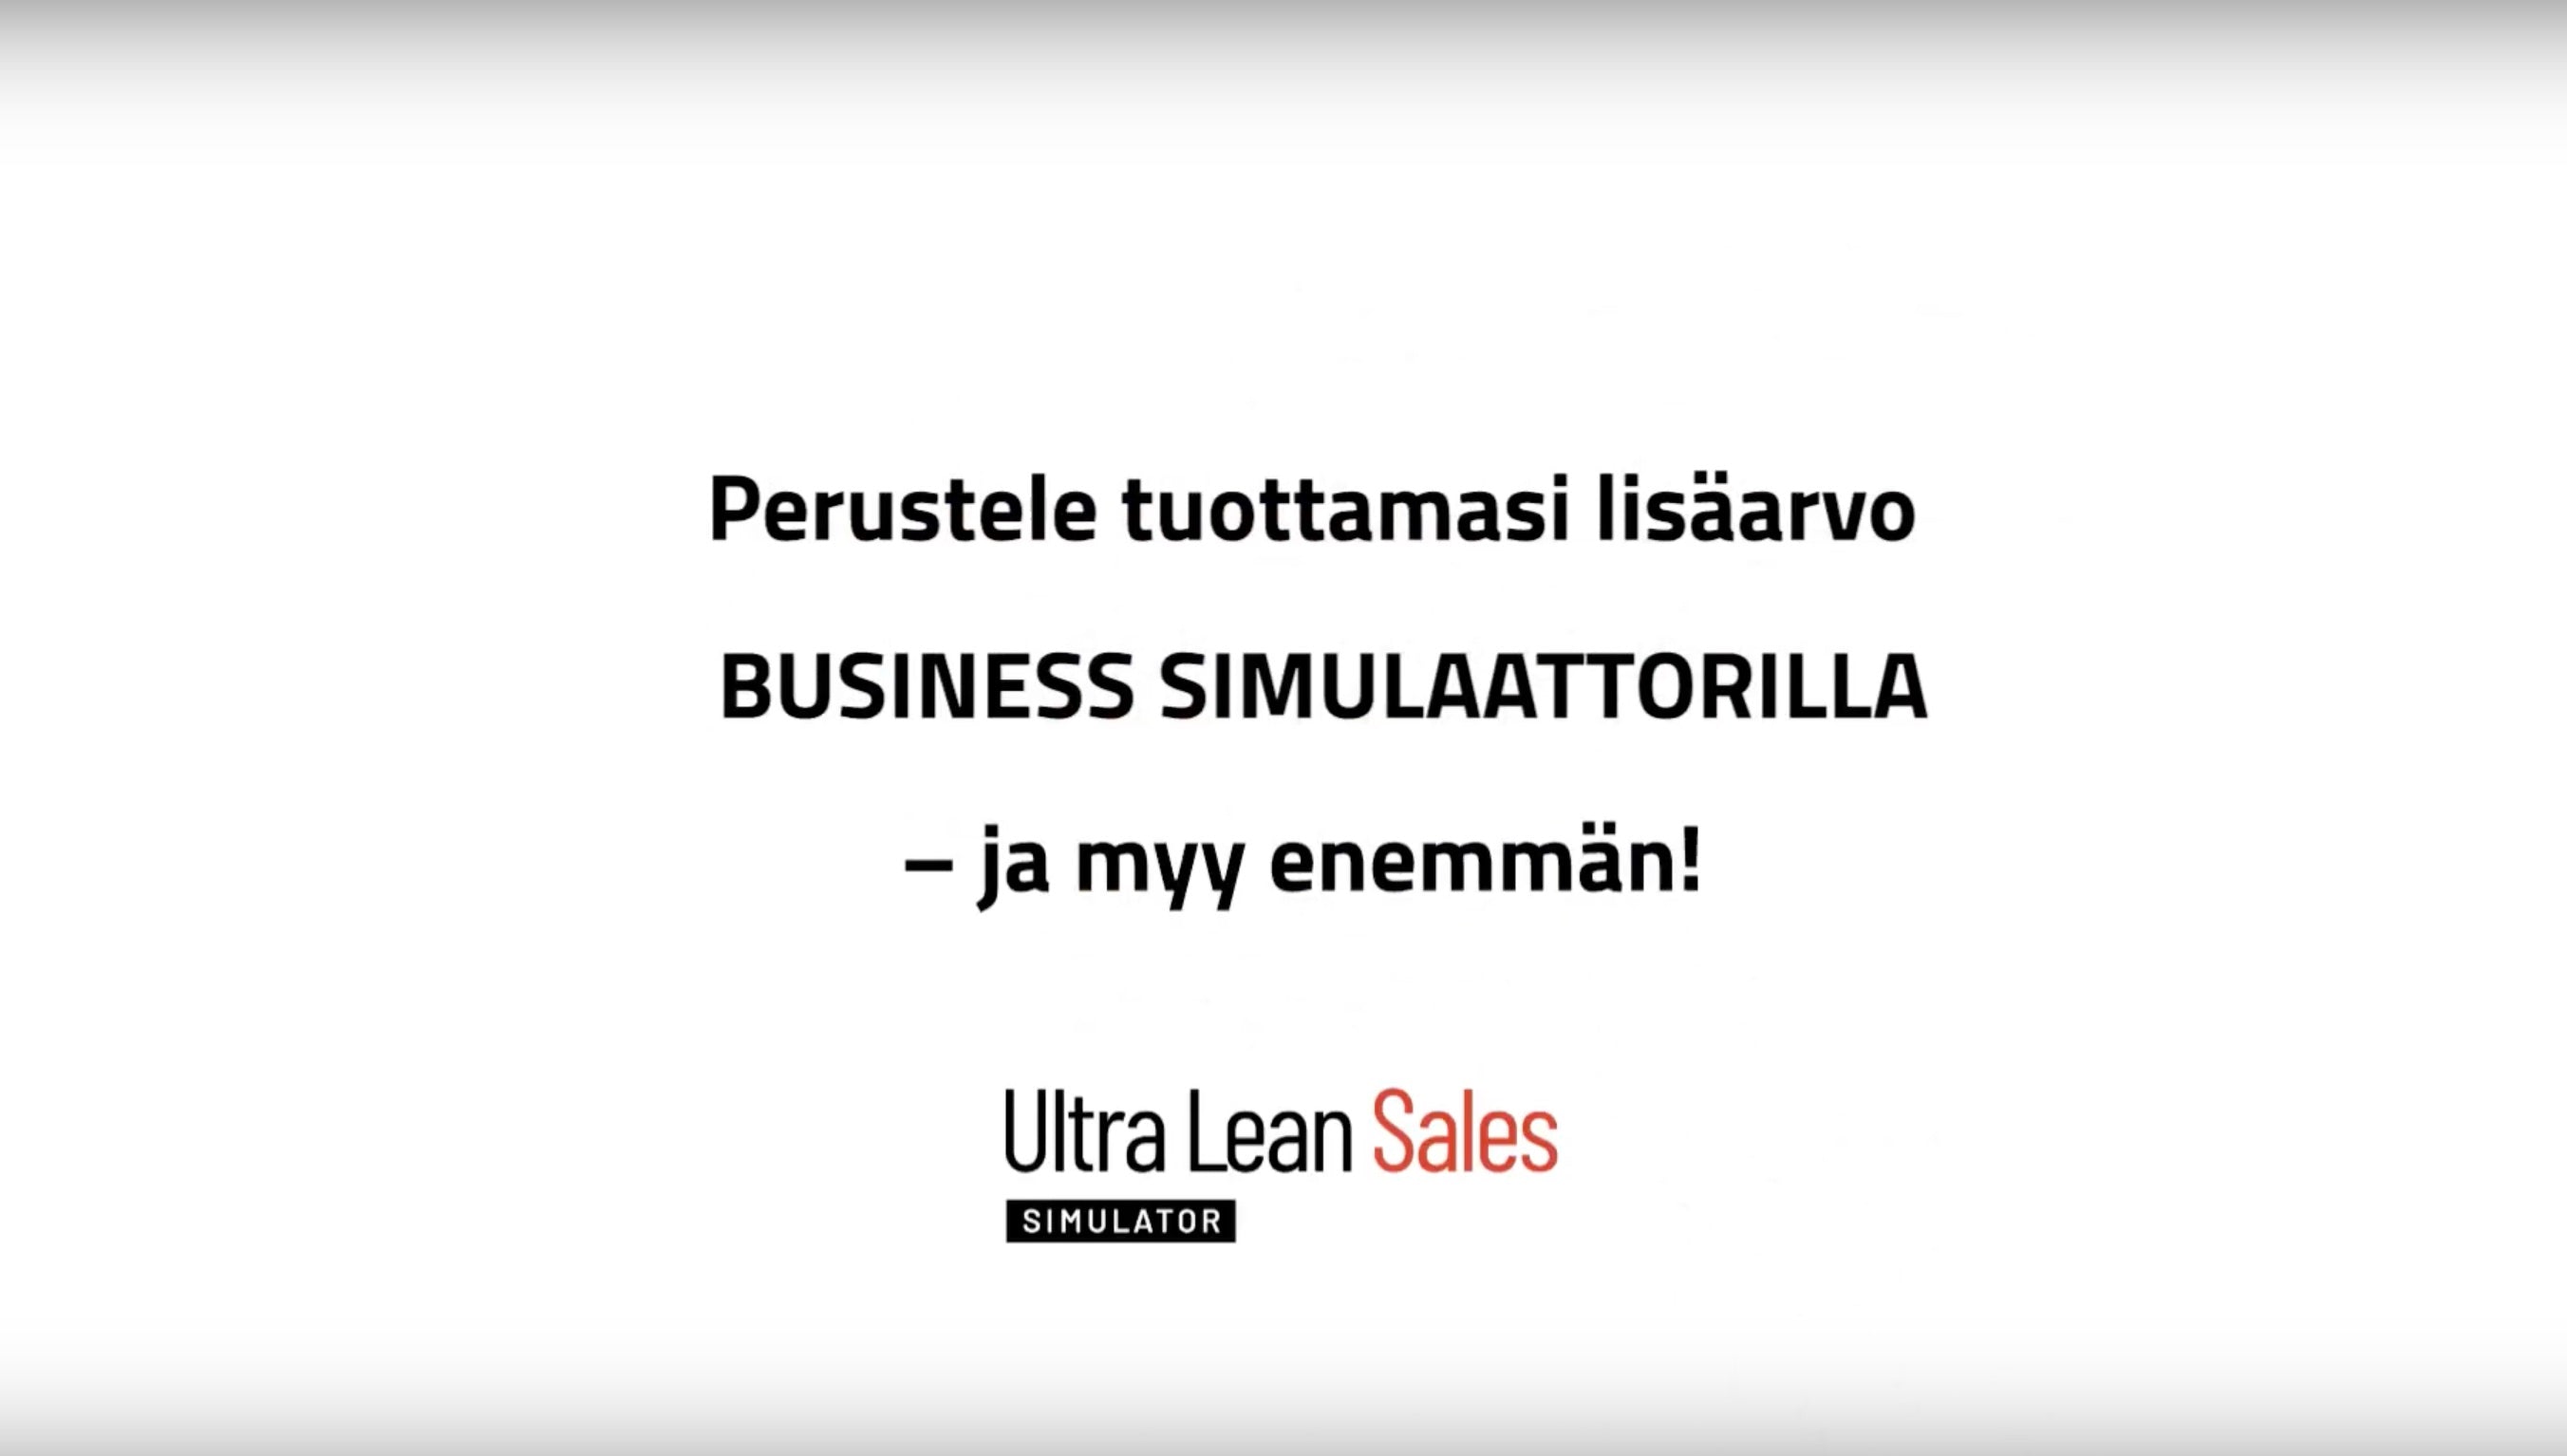 Lataa video: Perustele tuottamasi lisäarvo Business Simulaattorilla - ja myy enemmän!